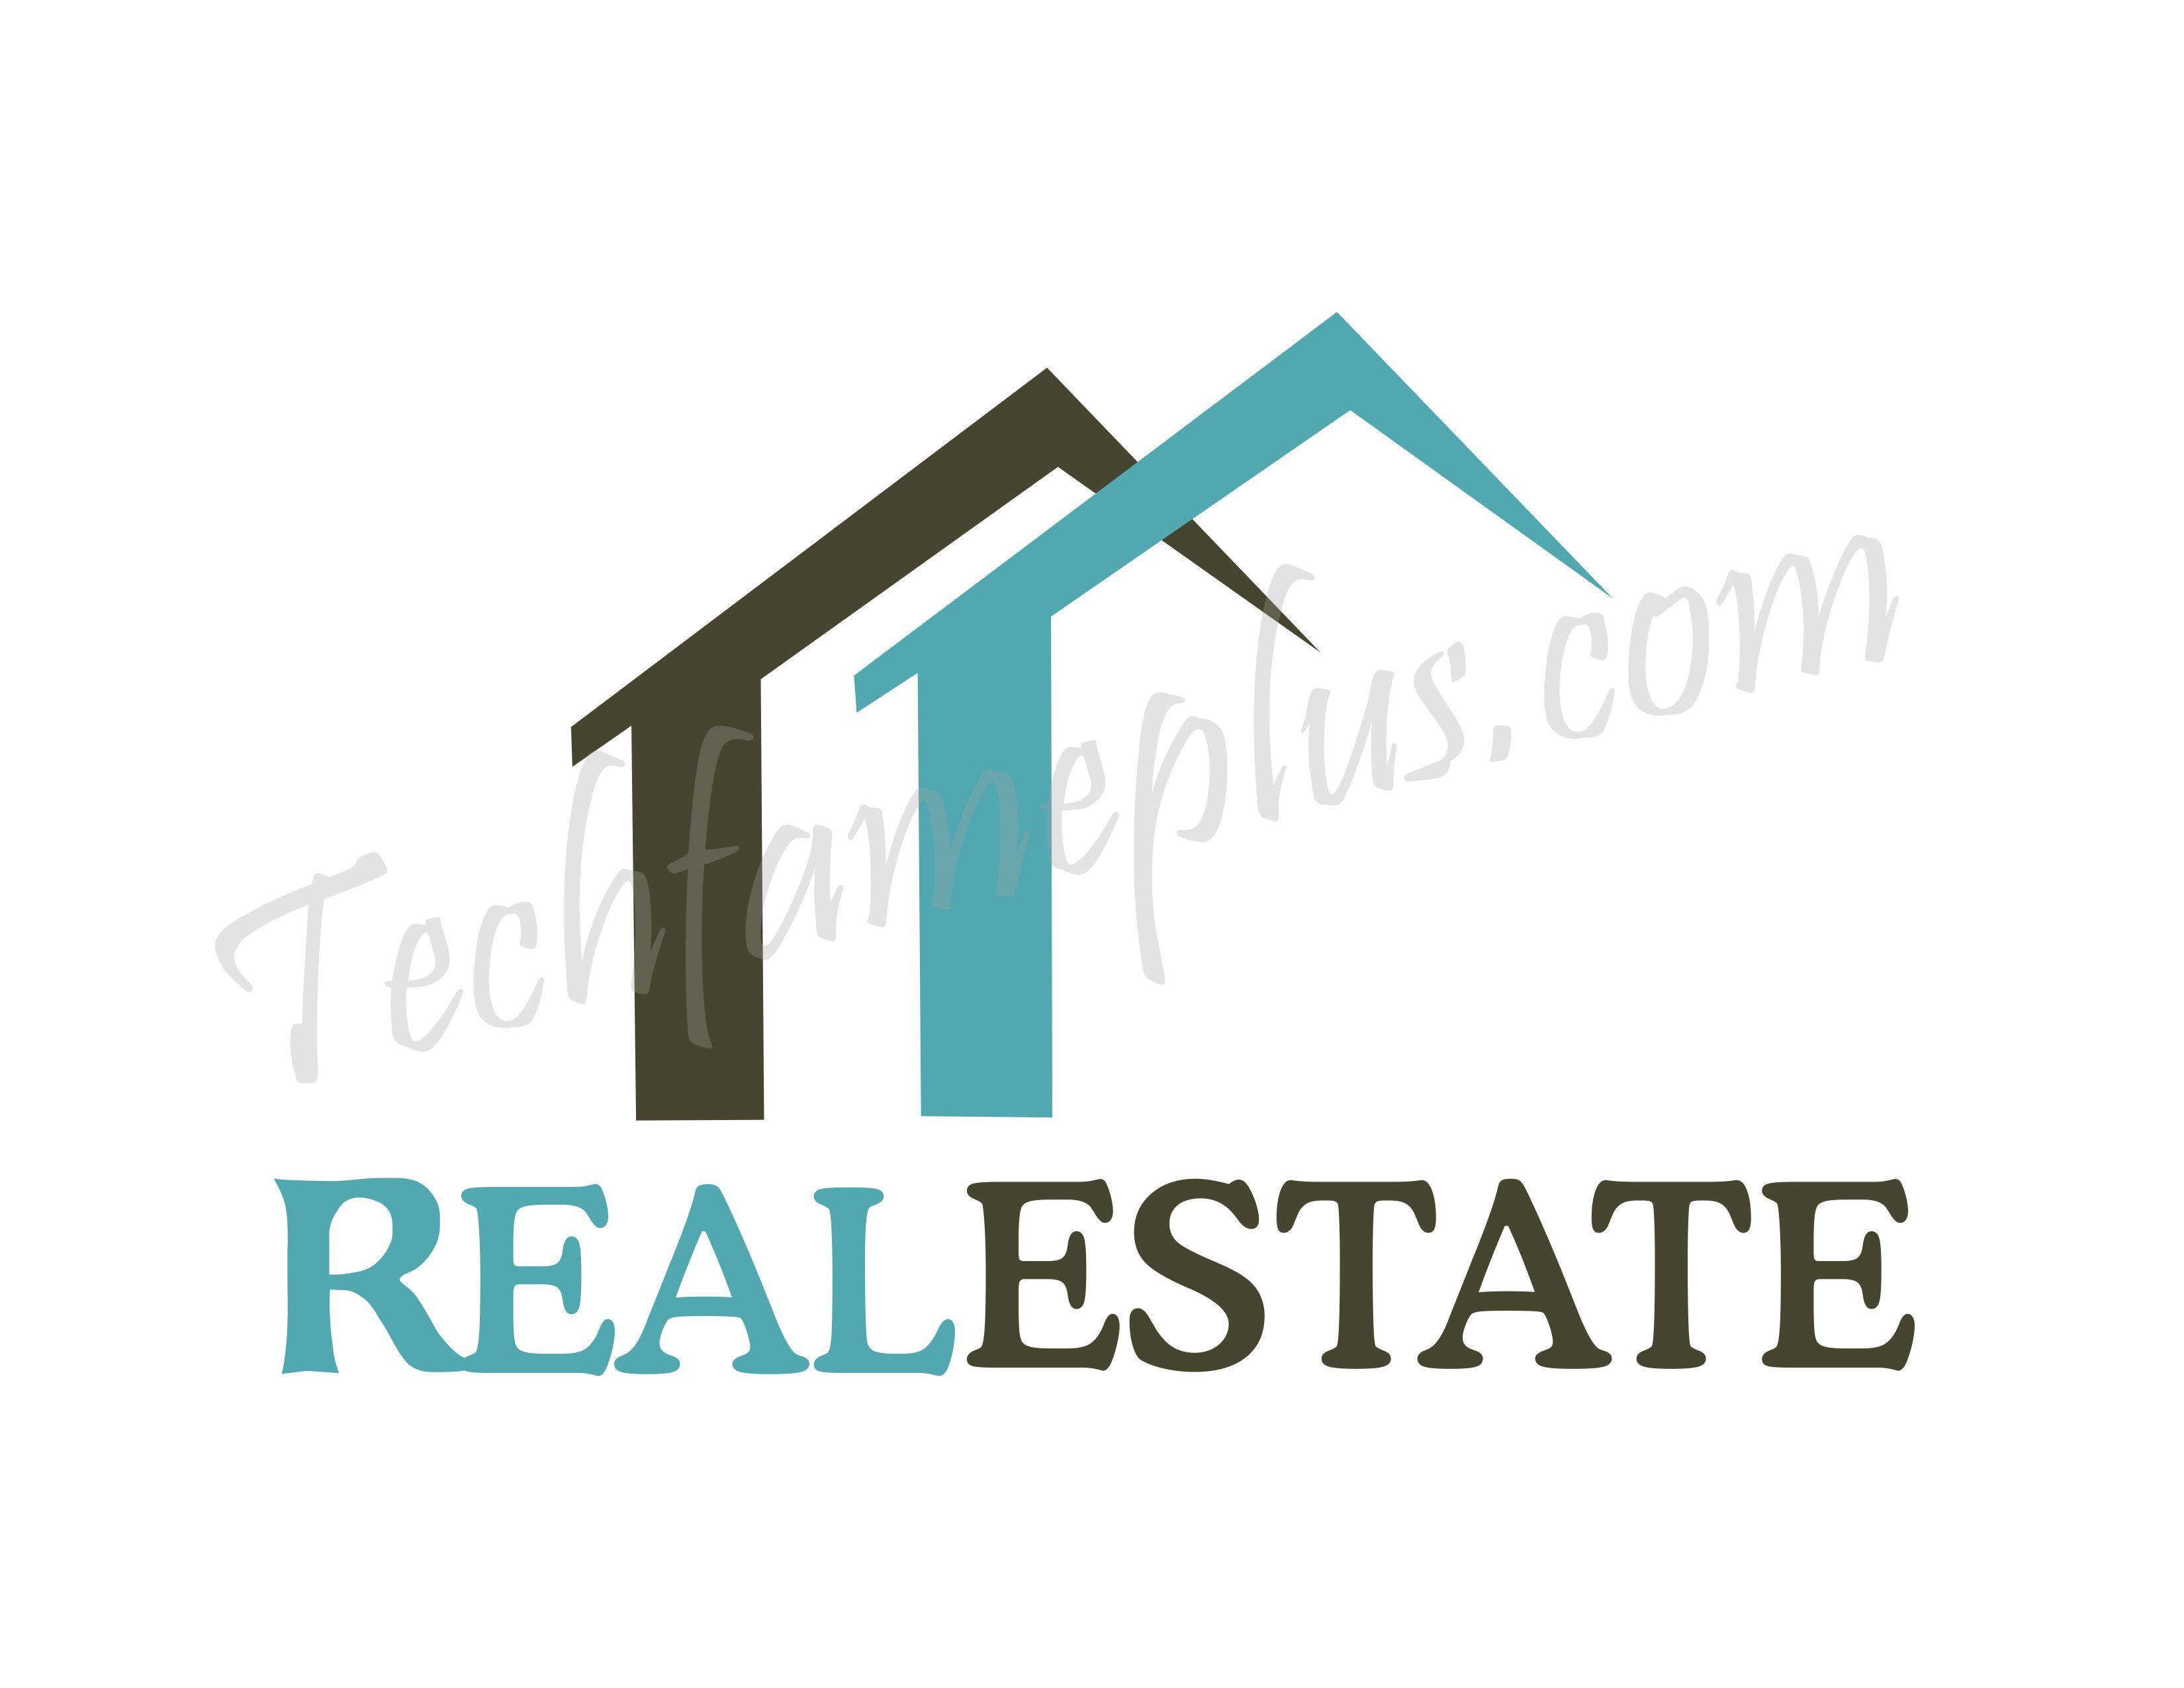 Best Real Estate Logo - Best Real Estate PSD Logo Mockup Design